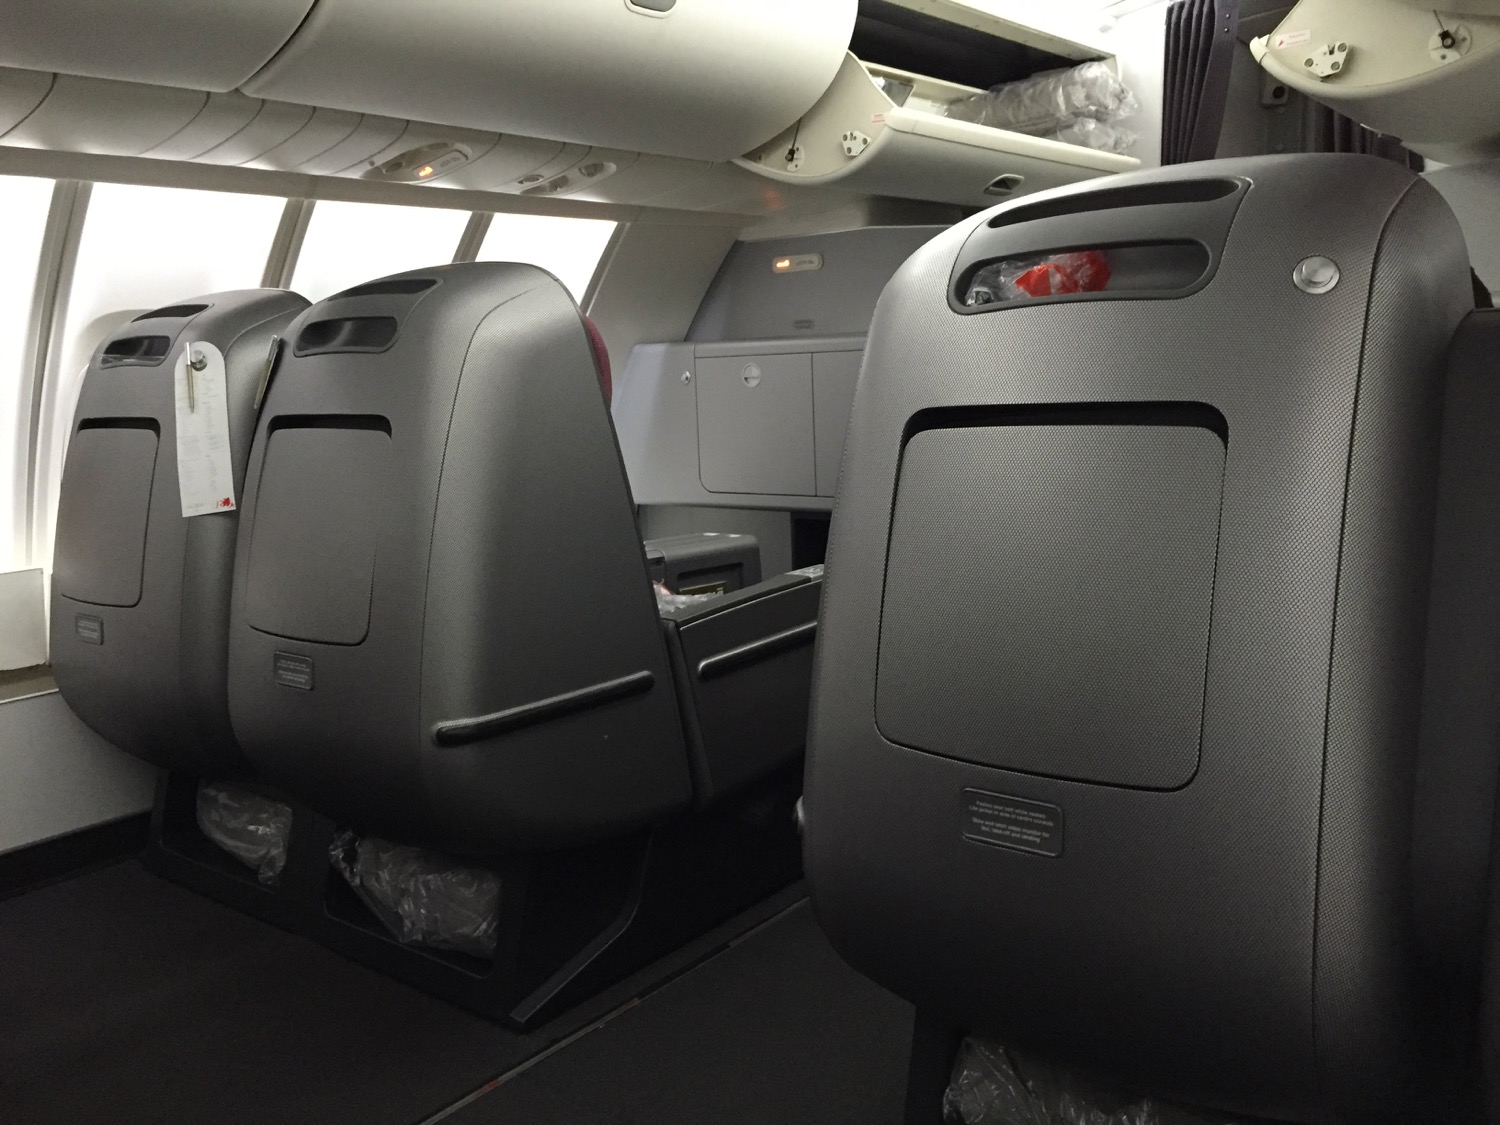 Qantas Business Class 747 Review - 6